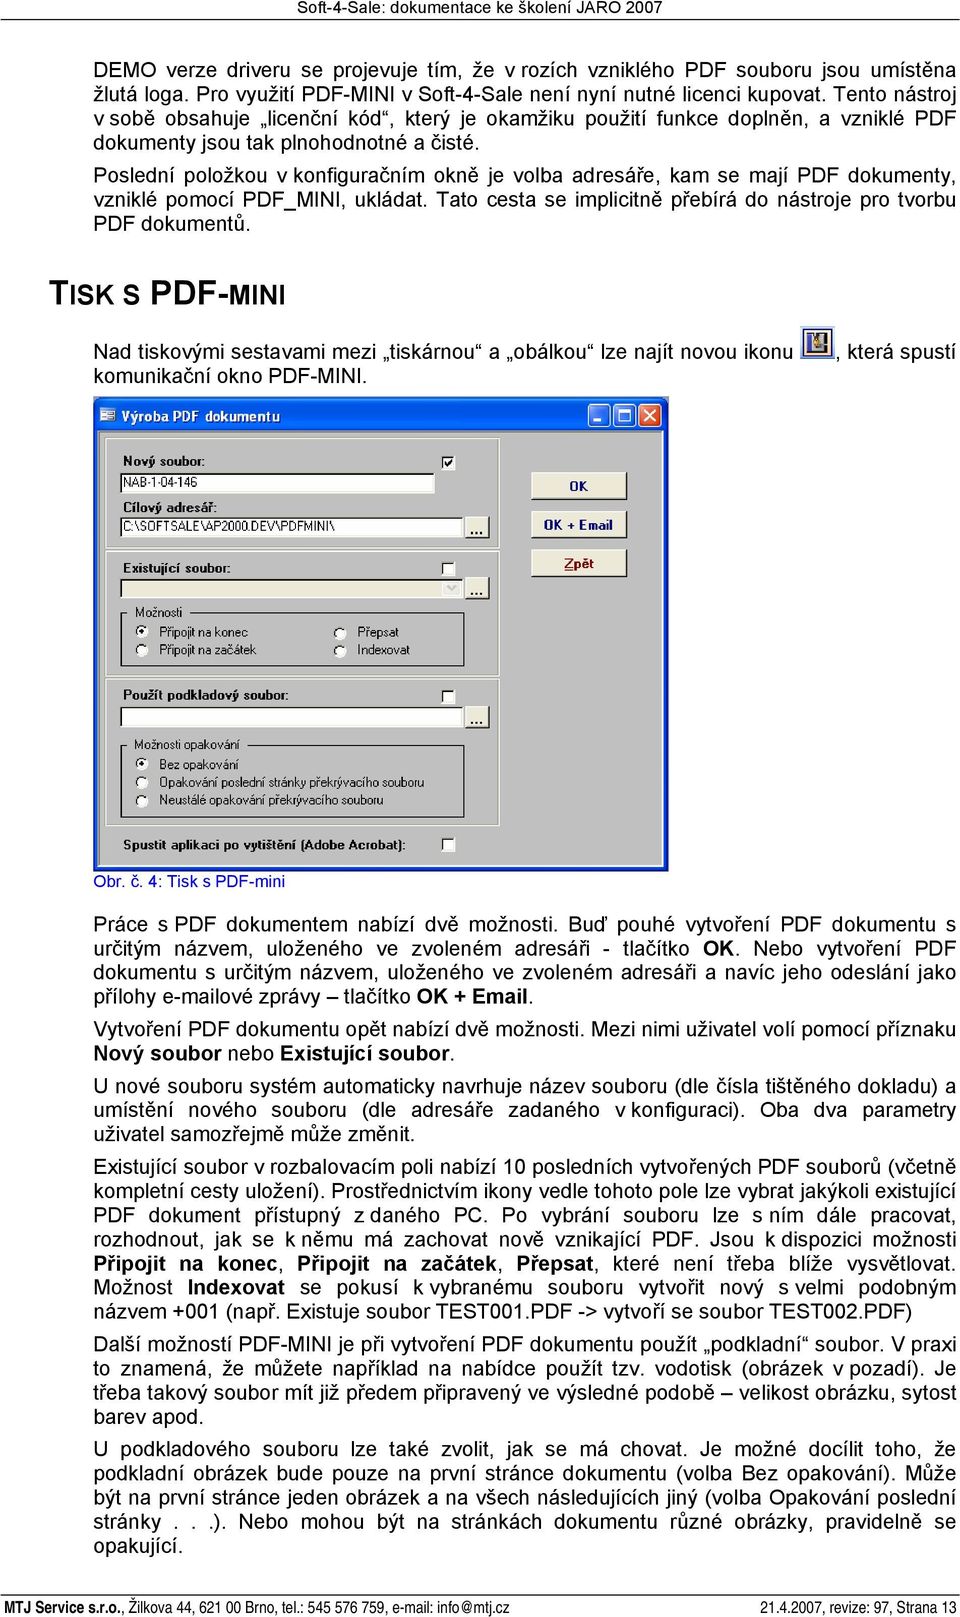 Poslední položkou v konfiguračním okně je volba adresáře, kam se mají PDF dokumenty, vzniklé pomocí PDF_MINI, ukládat. Tato cesta se implicitně přebírá do nástroje pro tvorbu PDF dokumentů.